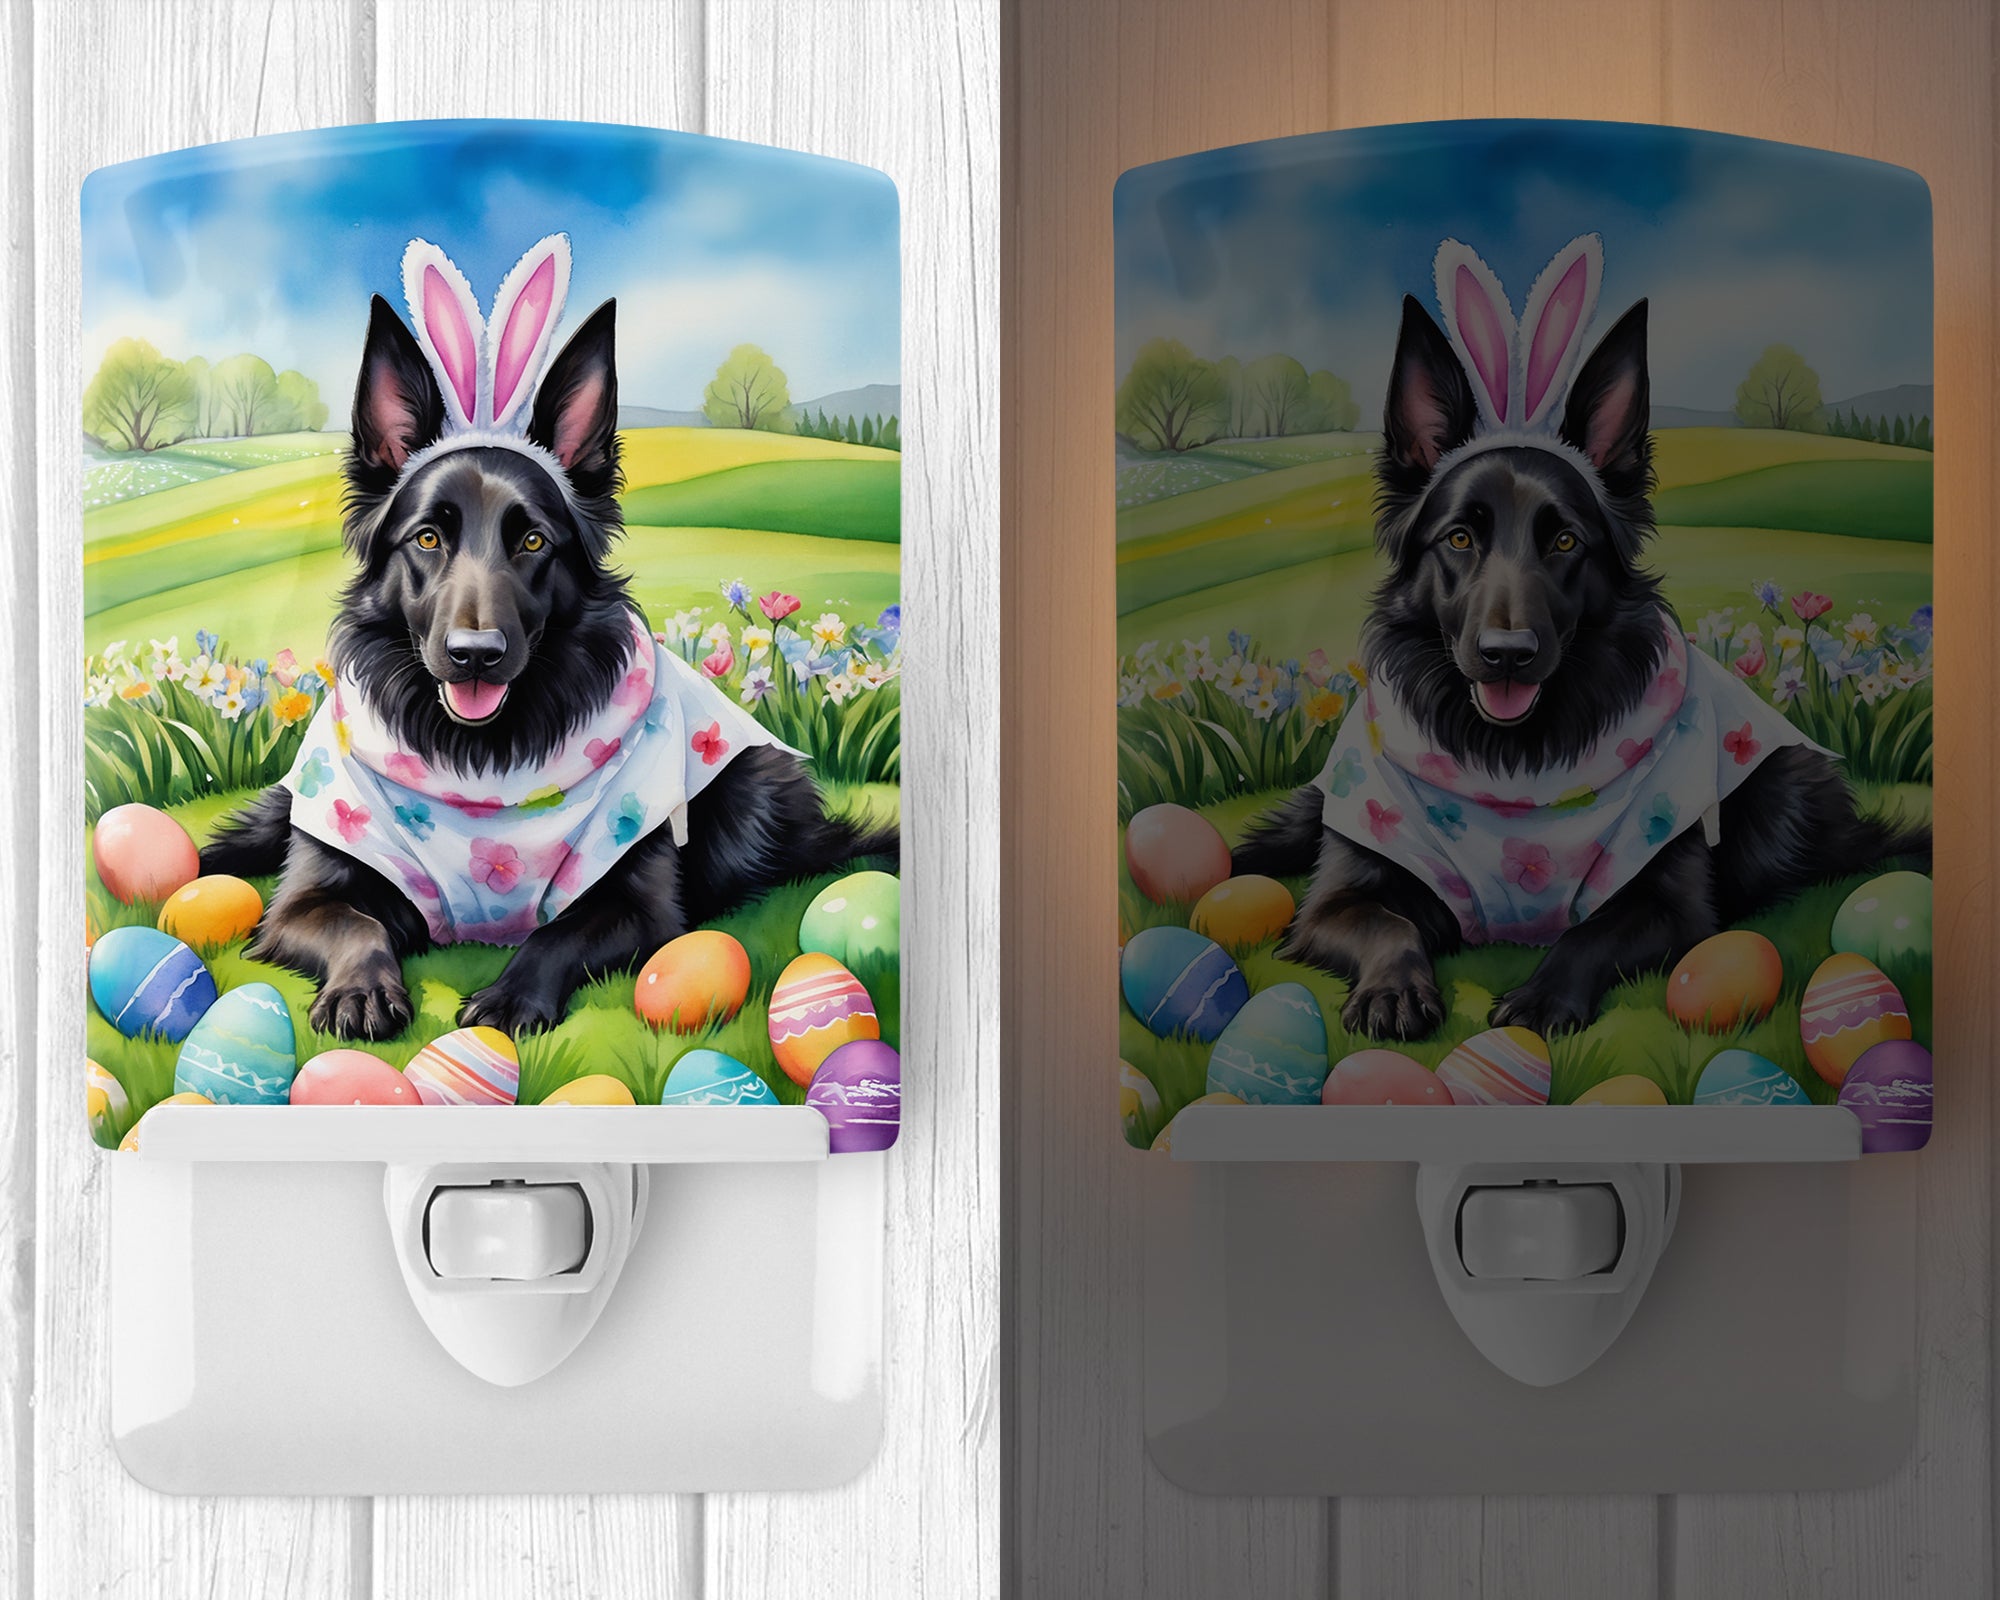 Buy this Belgian Sheepdog Easter Egg Hunt Ceramic Night Light